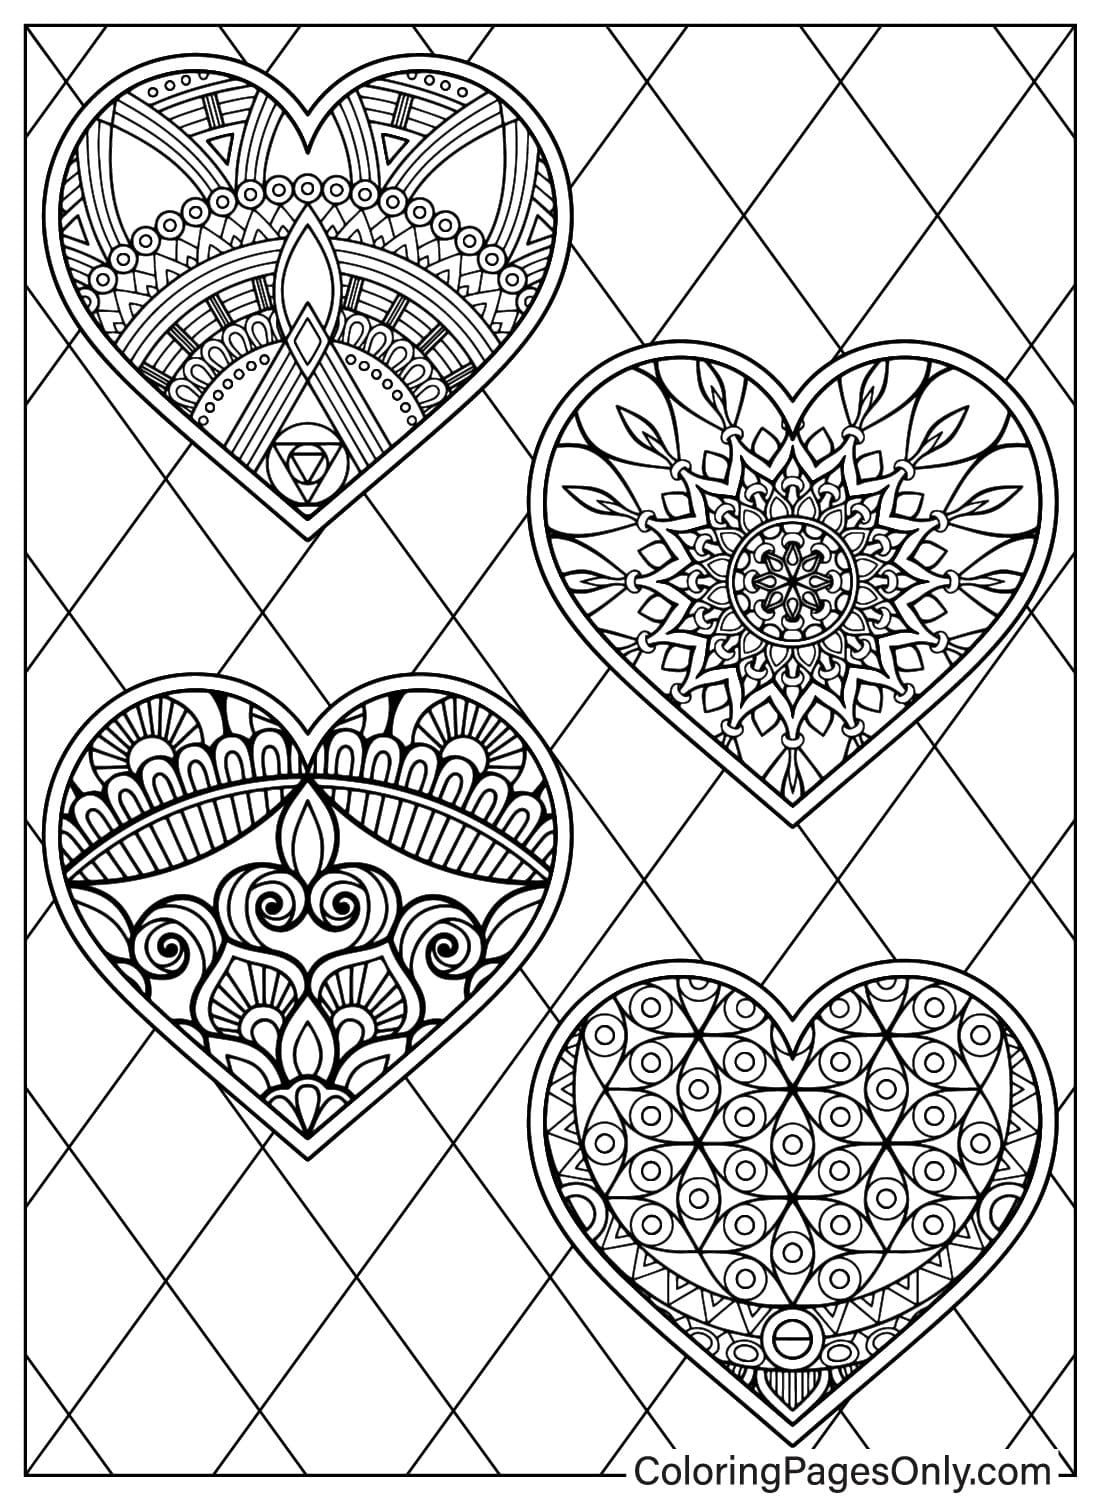 Página para colorear de Mandala Corazón de Corazón